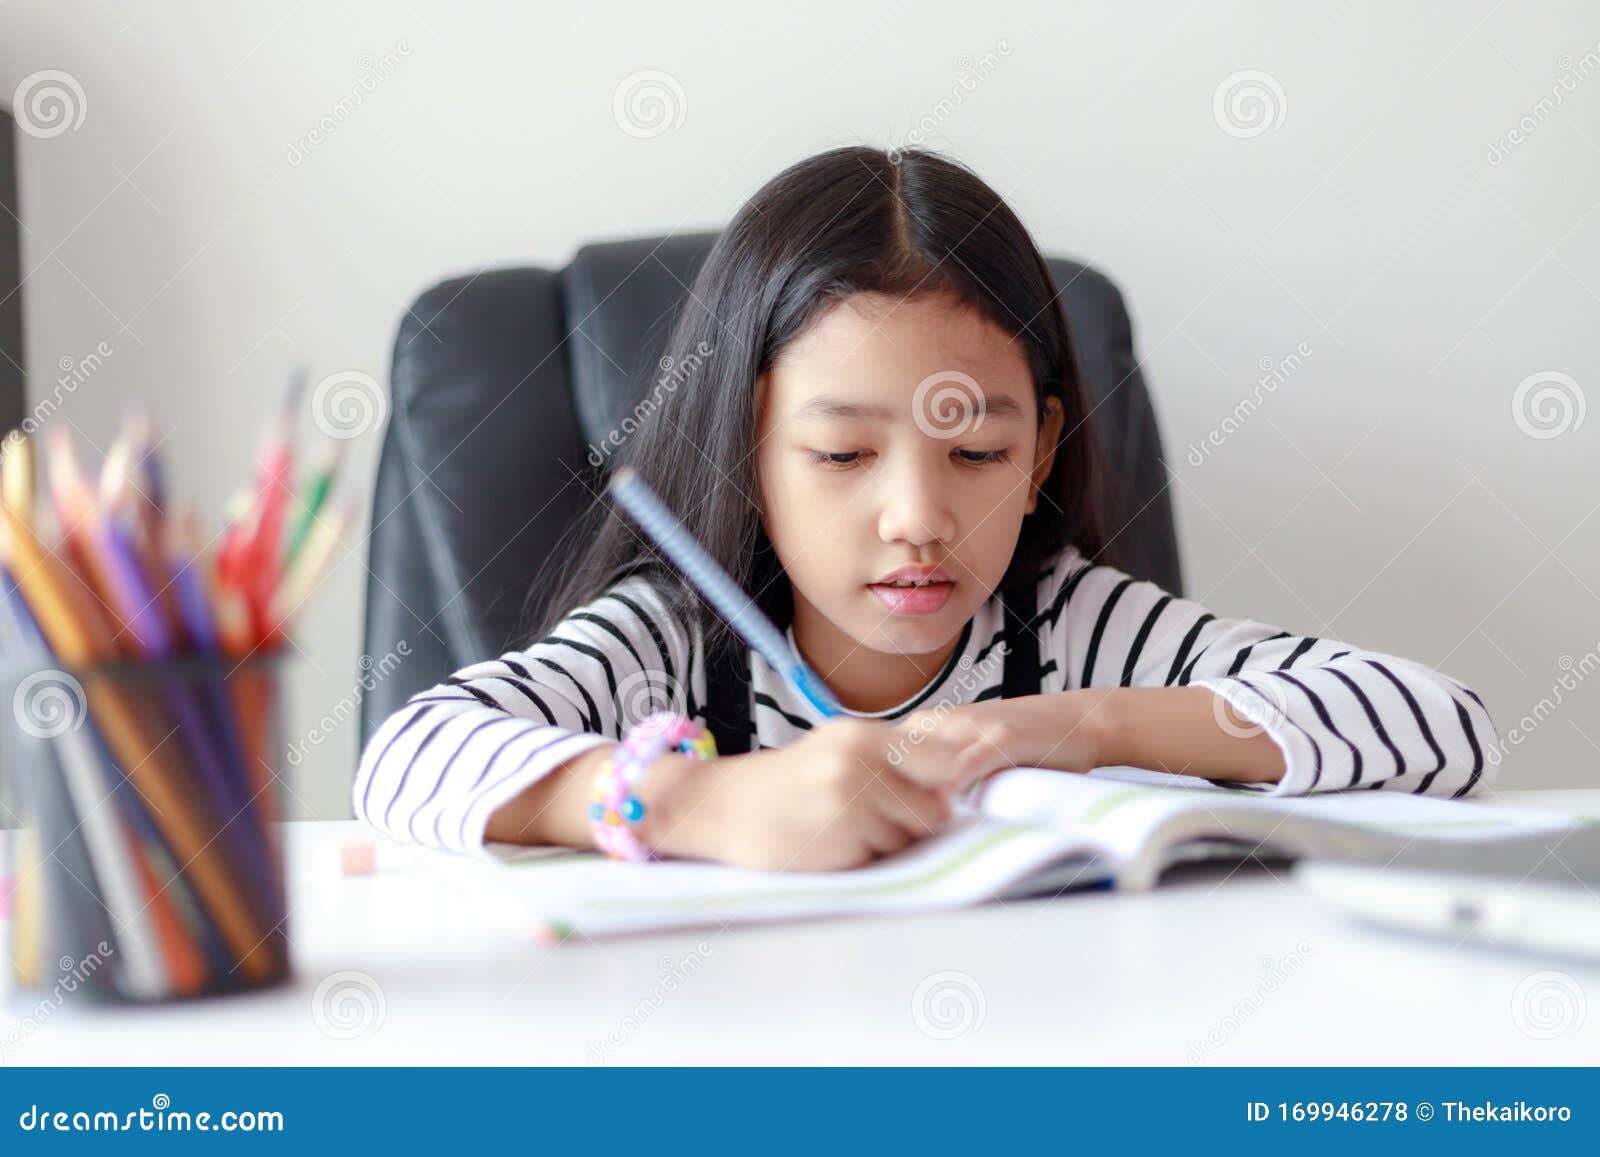 Little Asian Girl Doing Homework For Self Learning And Education